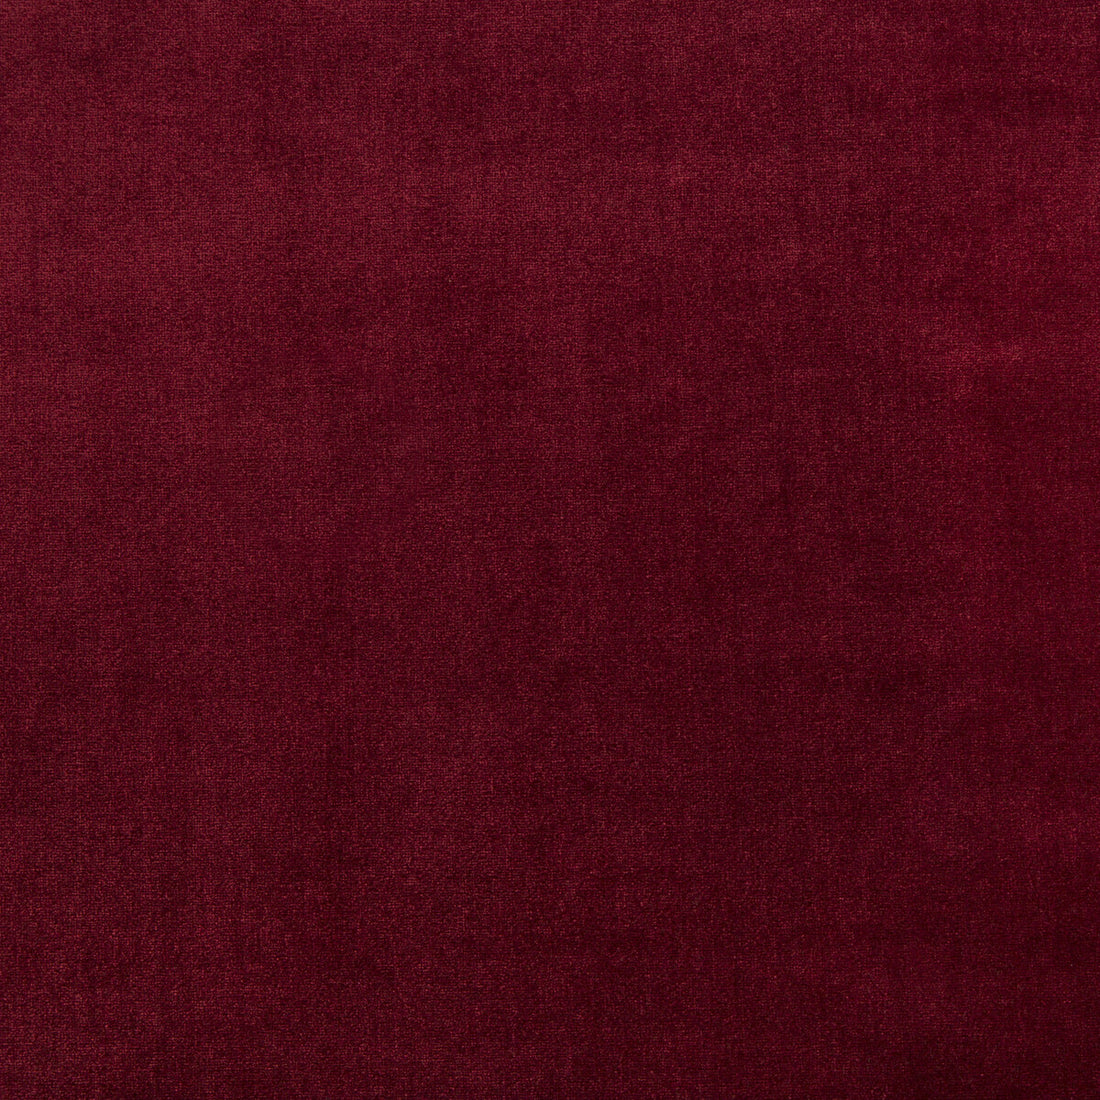 Duchess Velvet fabric in merlot color - pattern 34641.97.0 - by Kravet Couture